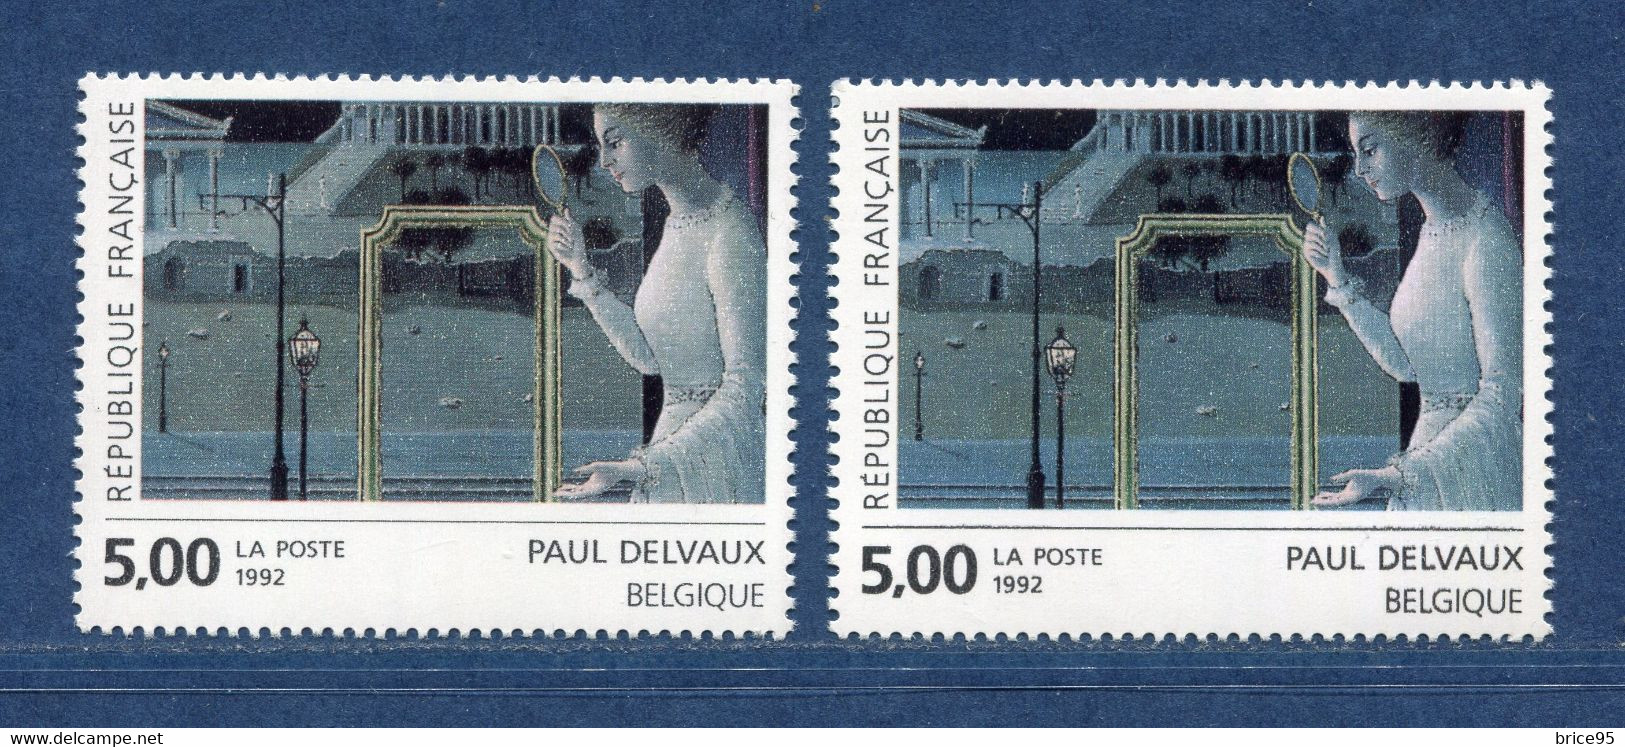 ⭐ France - Variété - YT N° 2781 - Couleurs - Pétouilles - Neuf Sans Charnière - 1992 ⭐ - Unused Stamps